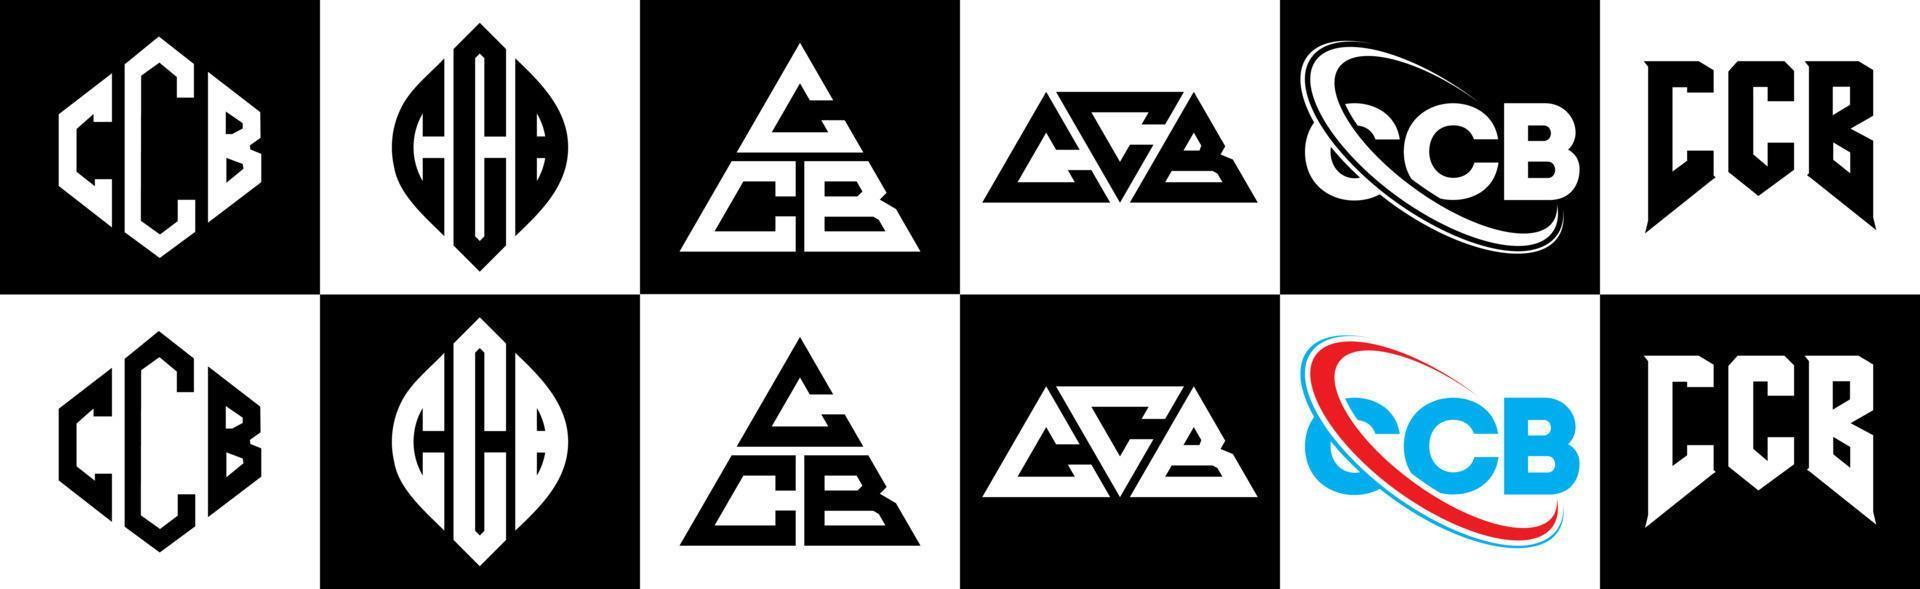 création de logo de lettre ccb en six styles. ccb polygone, cercle, triangle, hexagone, style plat et simple avec logo de lettre de variation de couleur noir et blanc dans un plan de travail. logo minimaliste et classique ccb vecteur